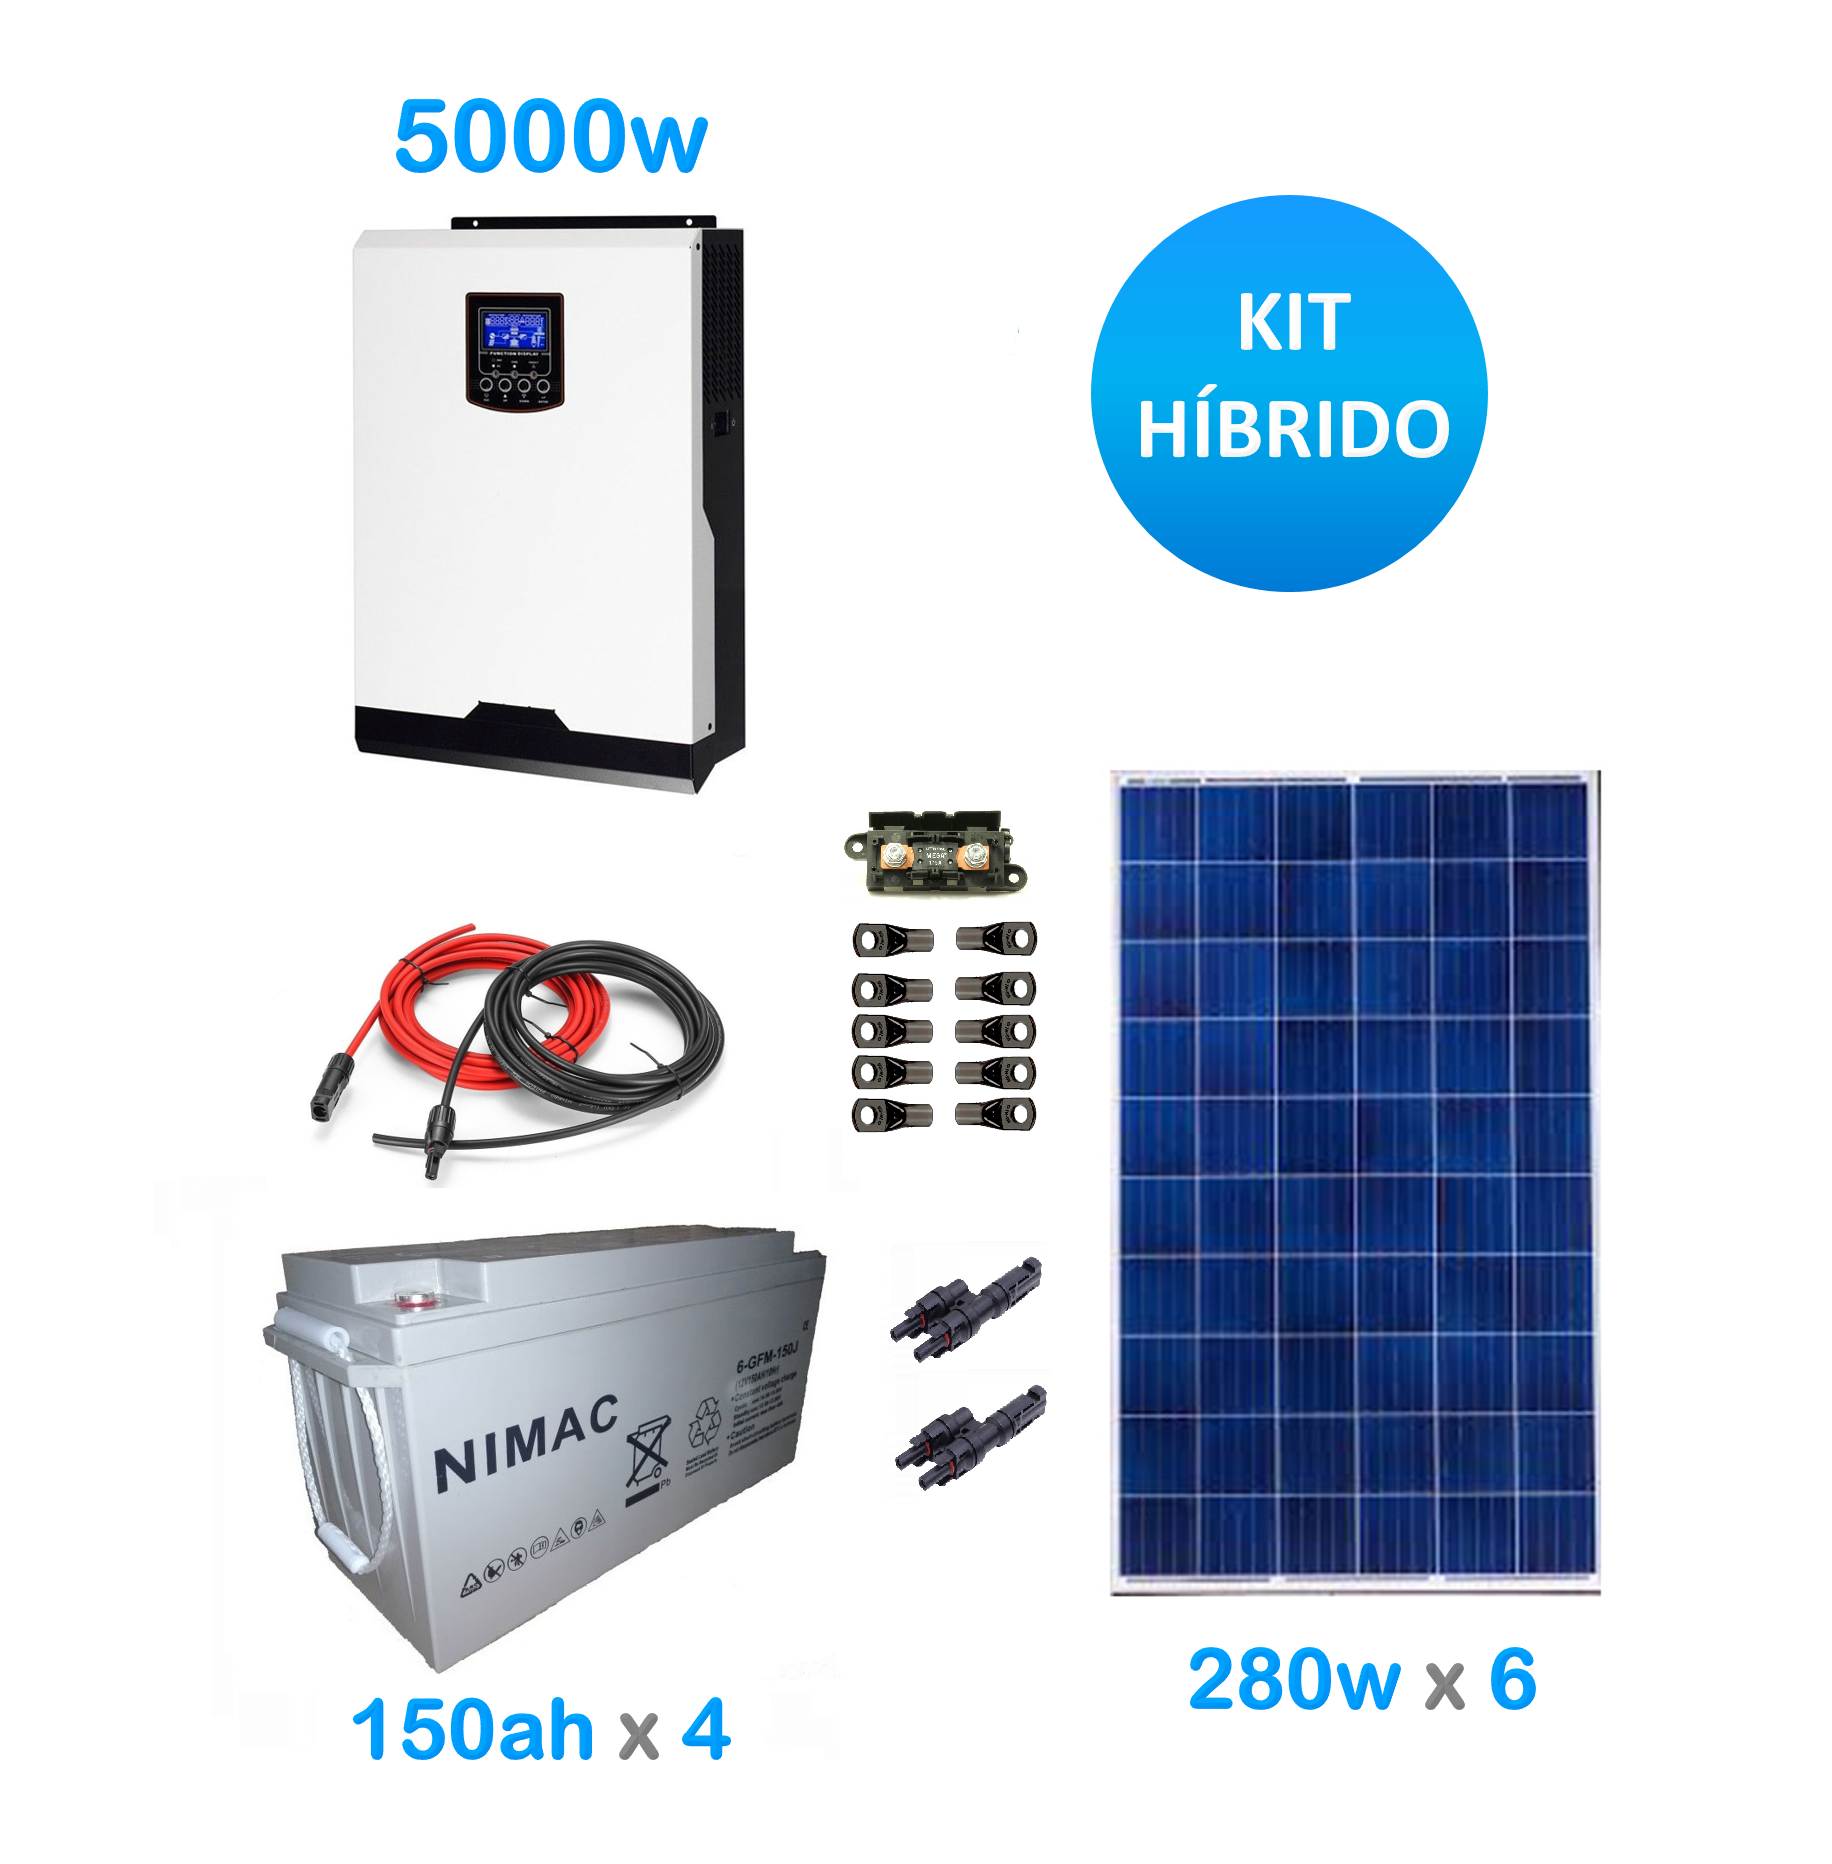 Kit solar hibrido 5000w medio